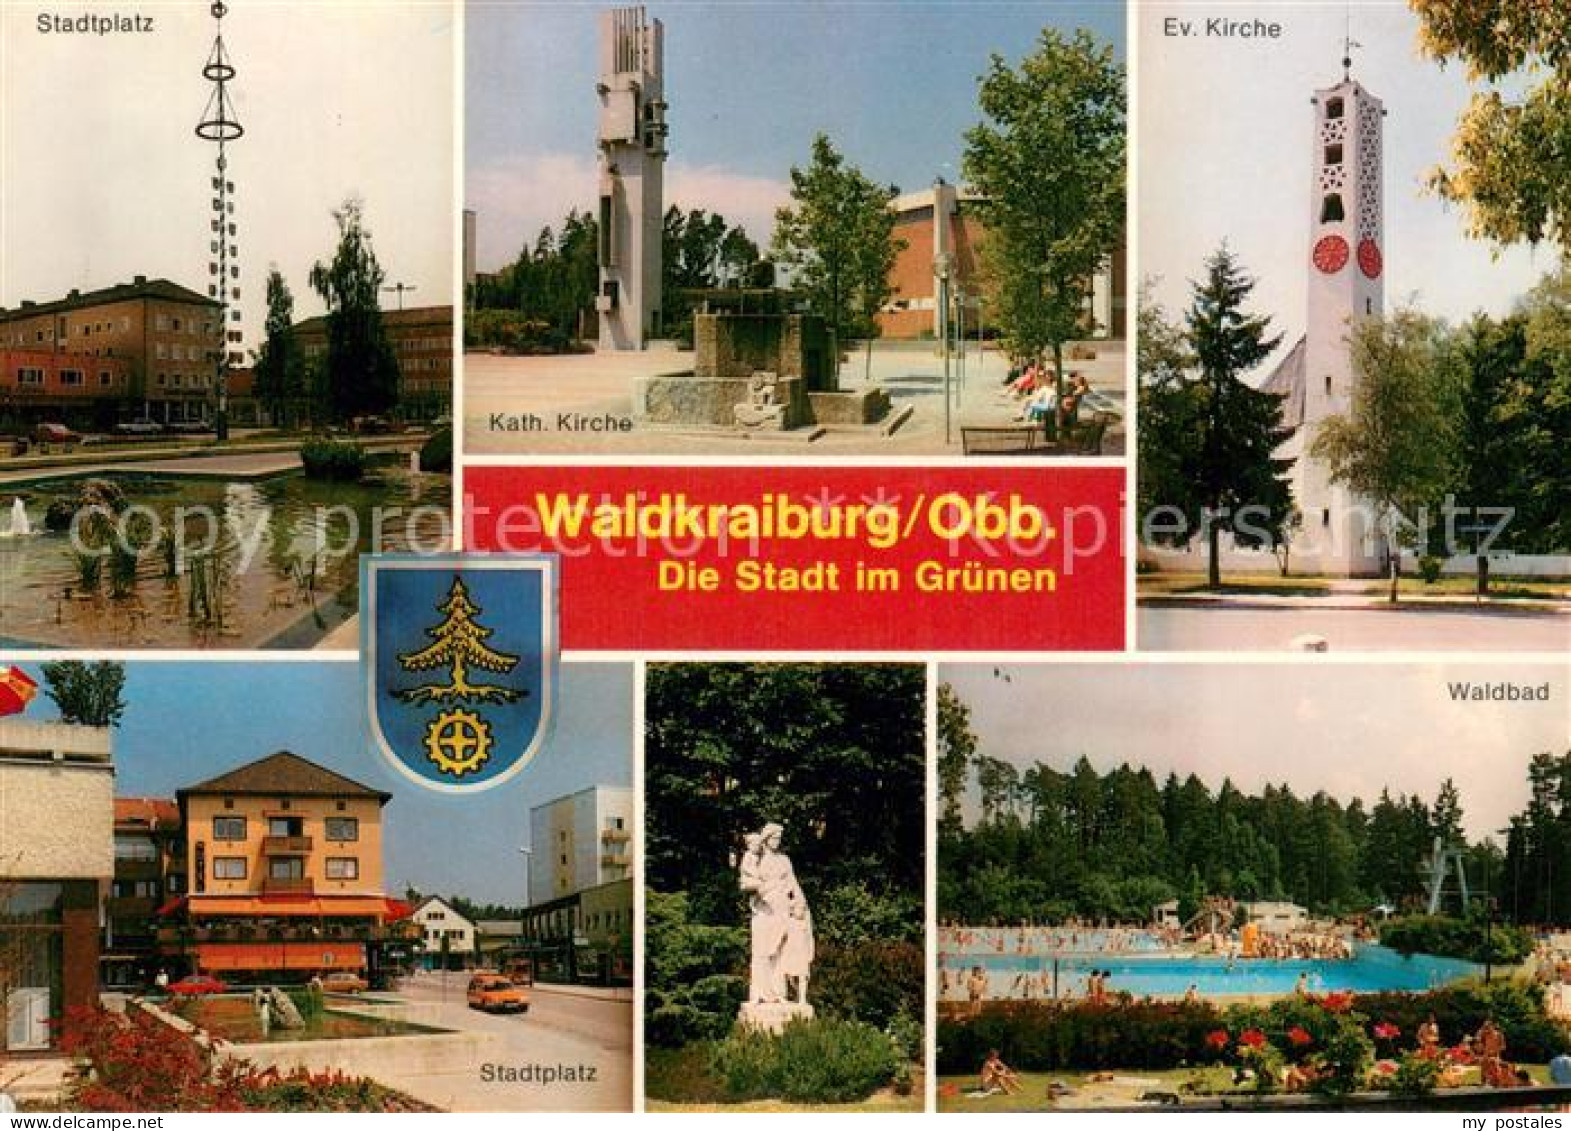 73737101 Waldkraiburg Stadtplatz Kath Kirche Ev Kirche Statue Waldbad Waldkraibu - Waldkraiburg